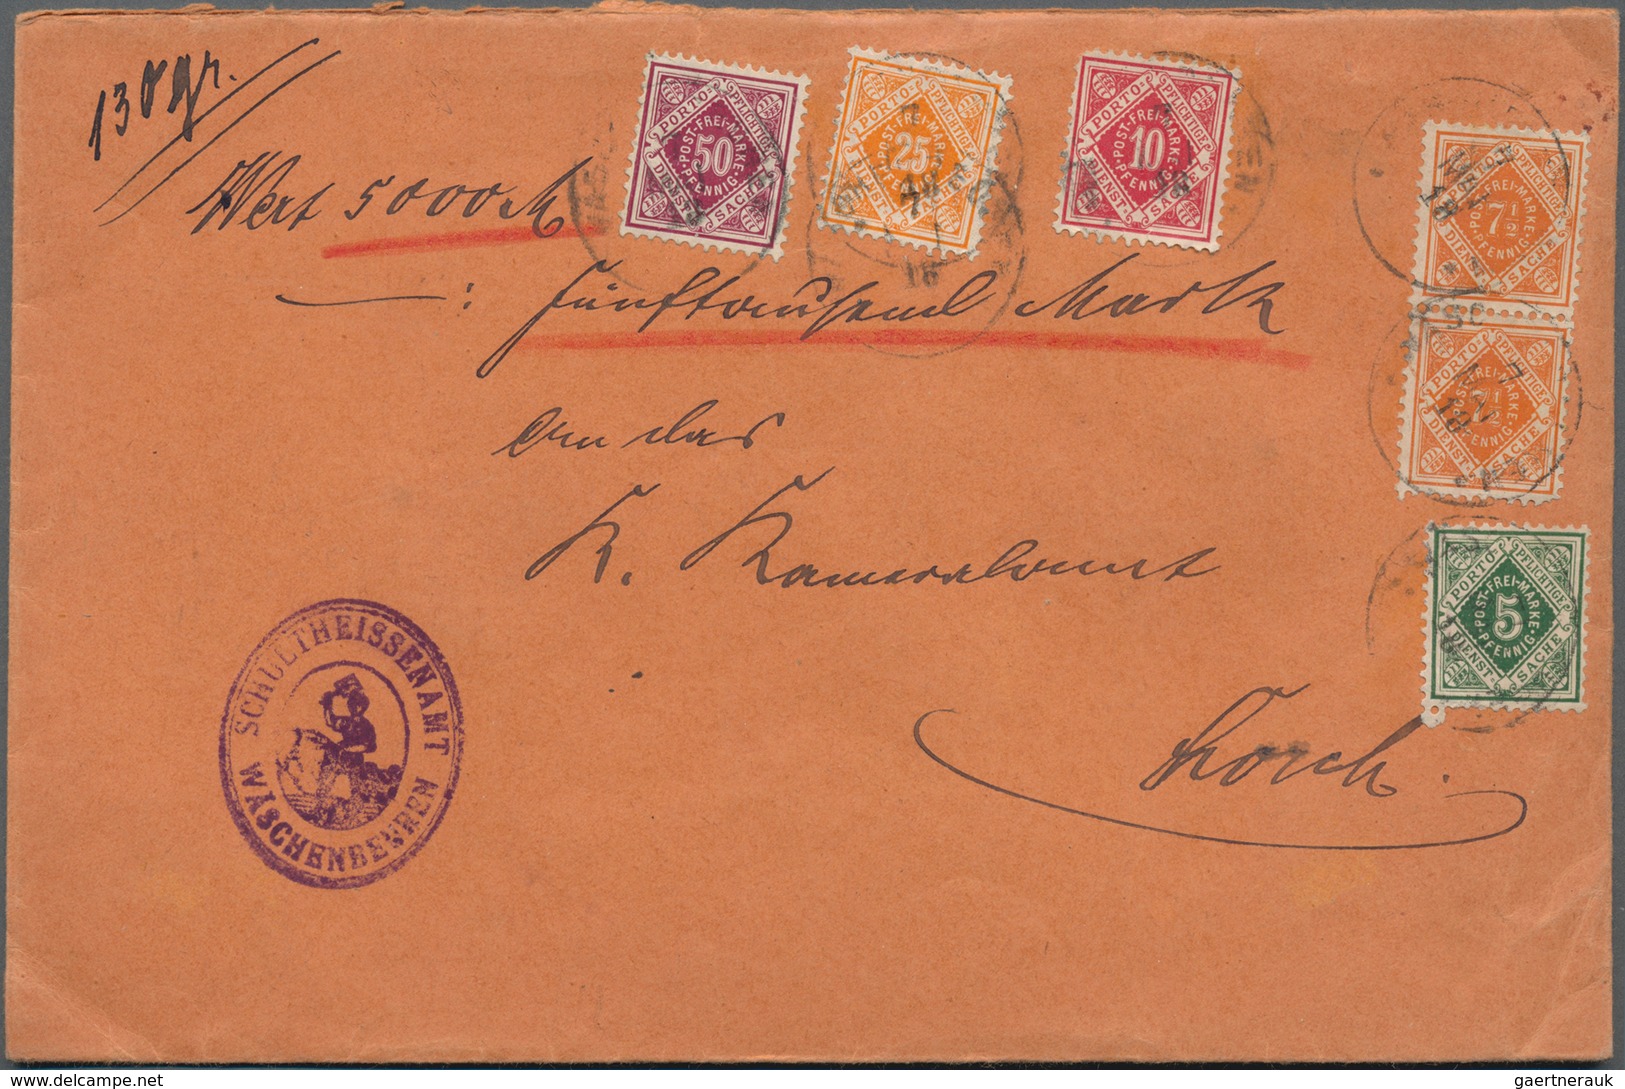 Württemberg - Marken und Briefe: 1882/1925, sehr vielseitige Sammlung von ca. 290 Briefen und Karten